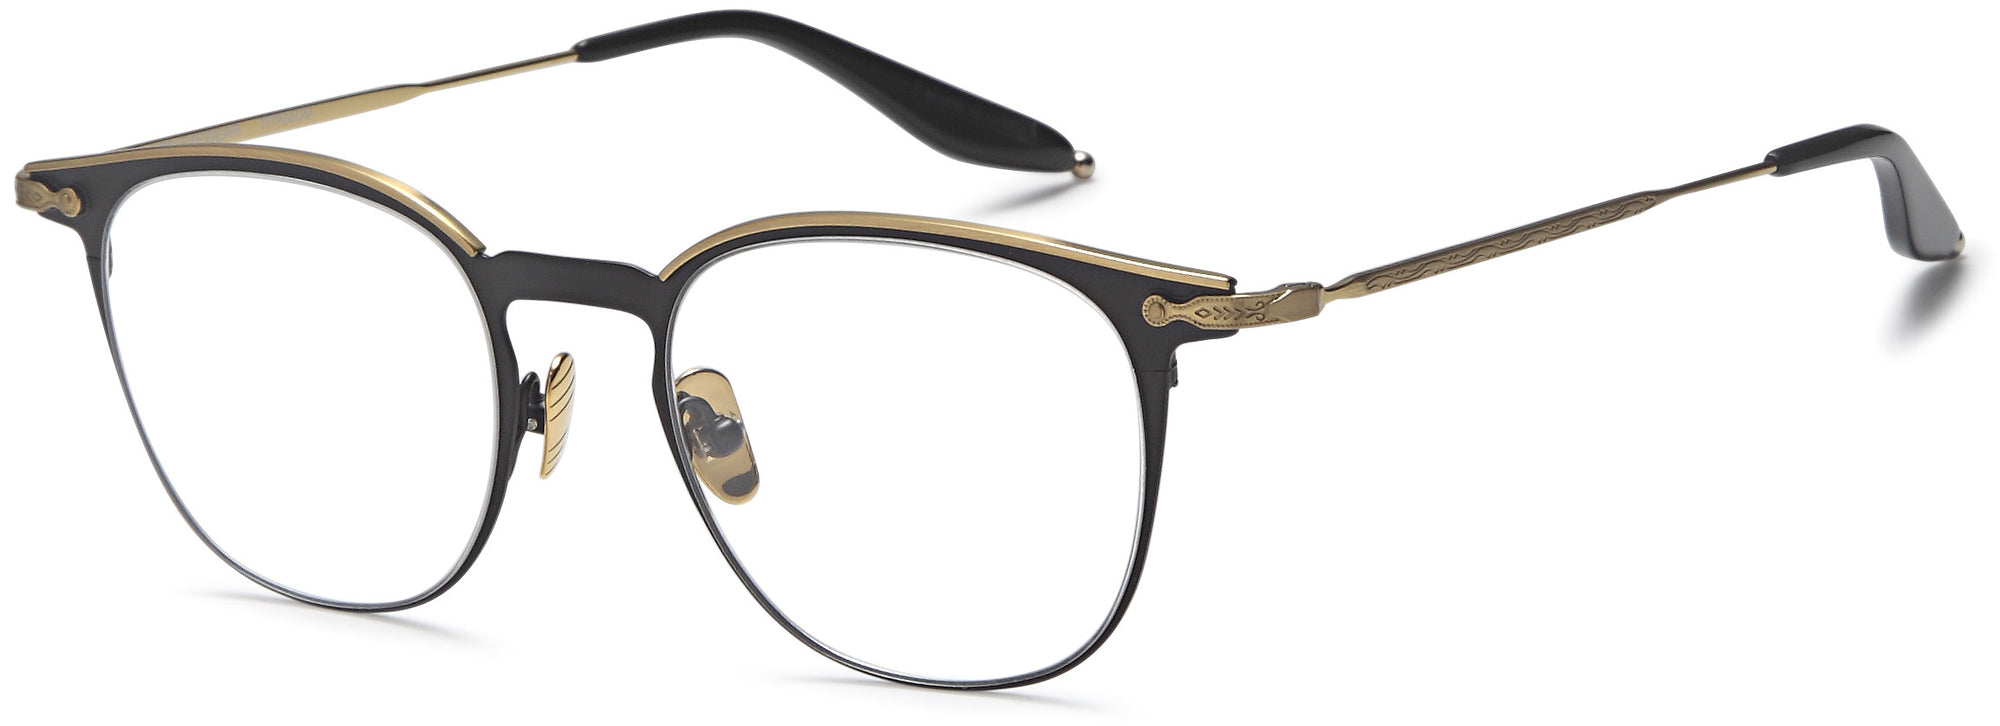 AGO Eyeglasses AGOT701 - Go-Readers.com